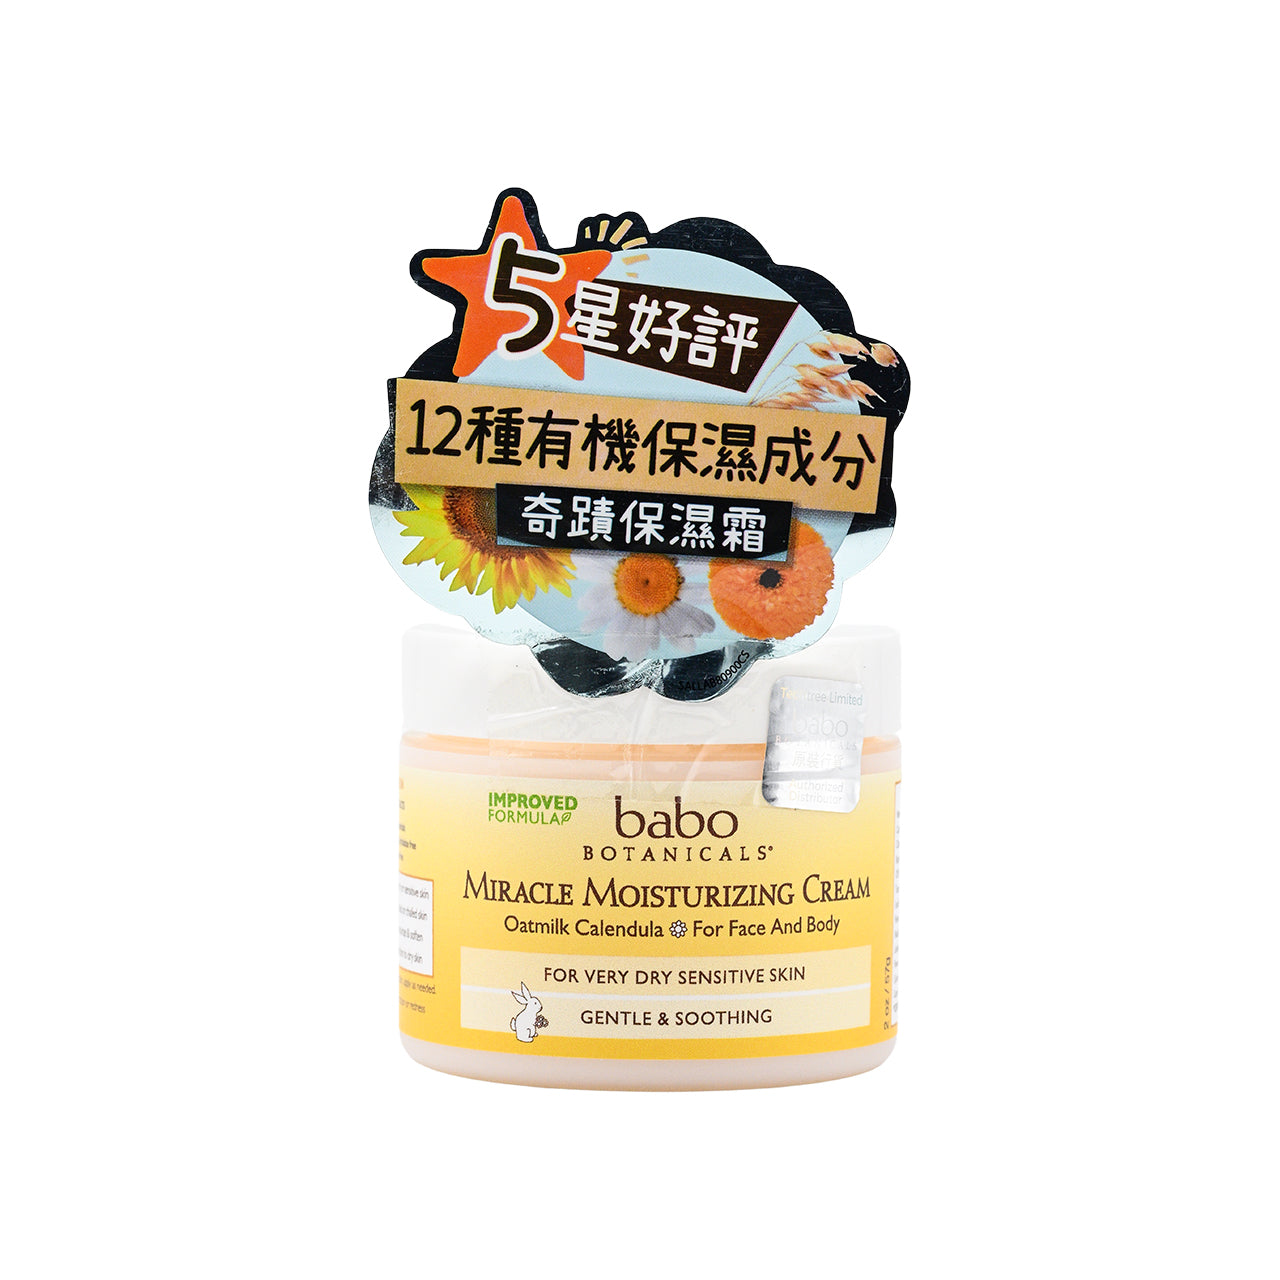 Babo Botanicals Miracle Moisturizing Cream 57g